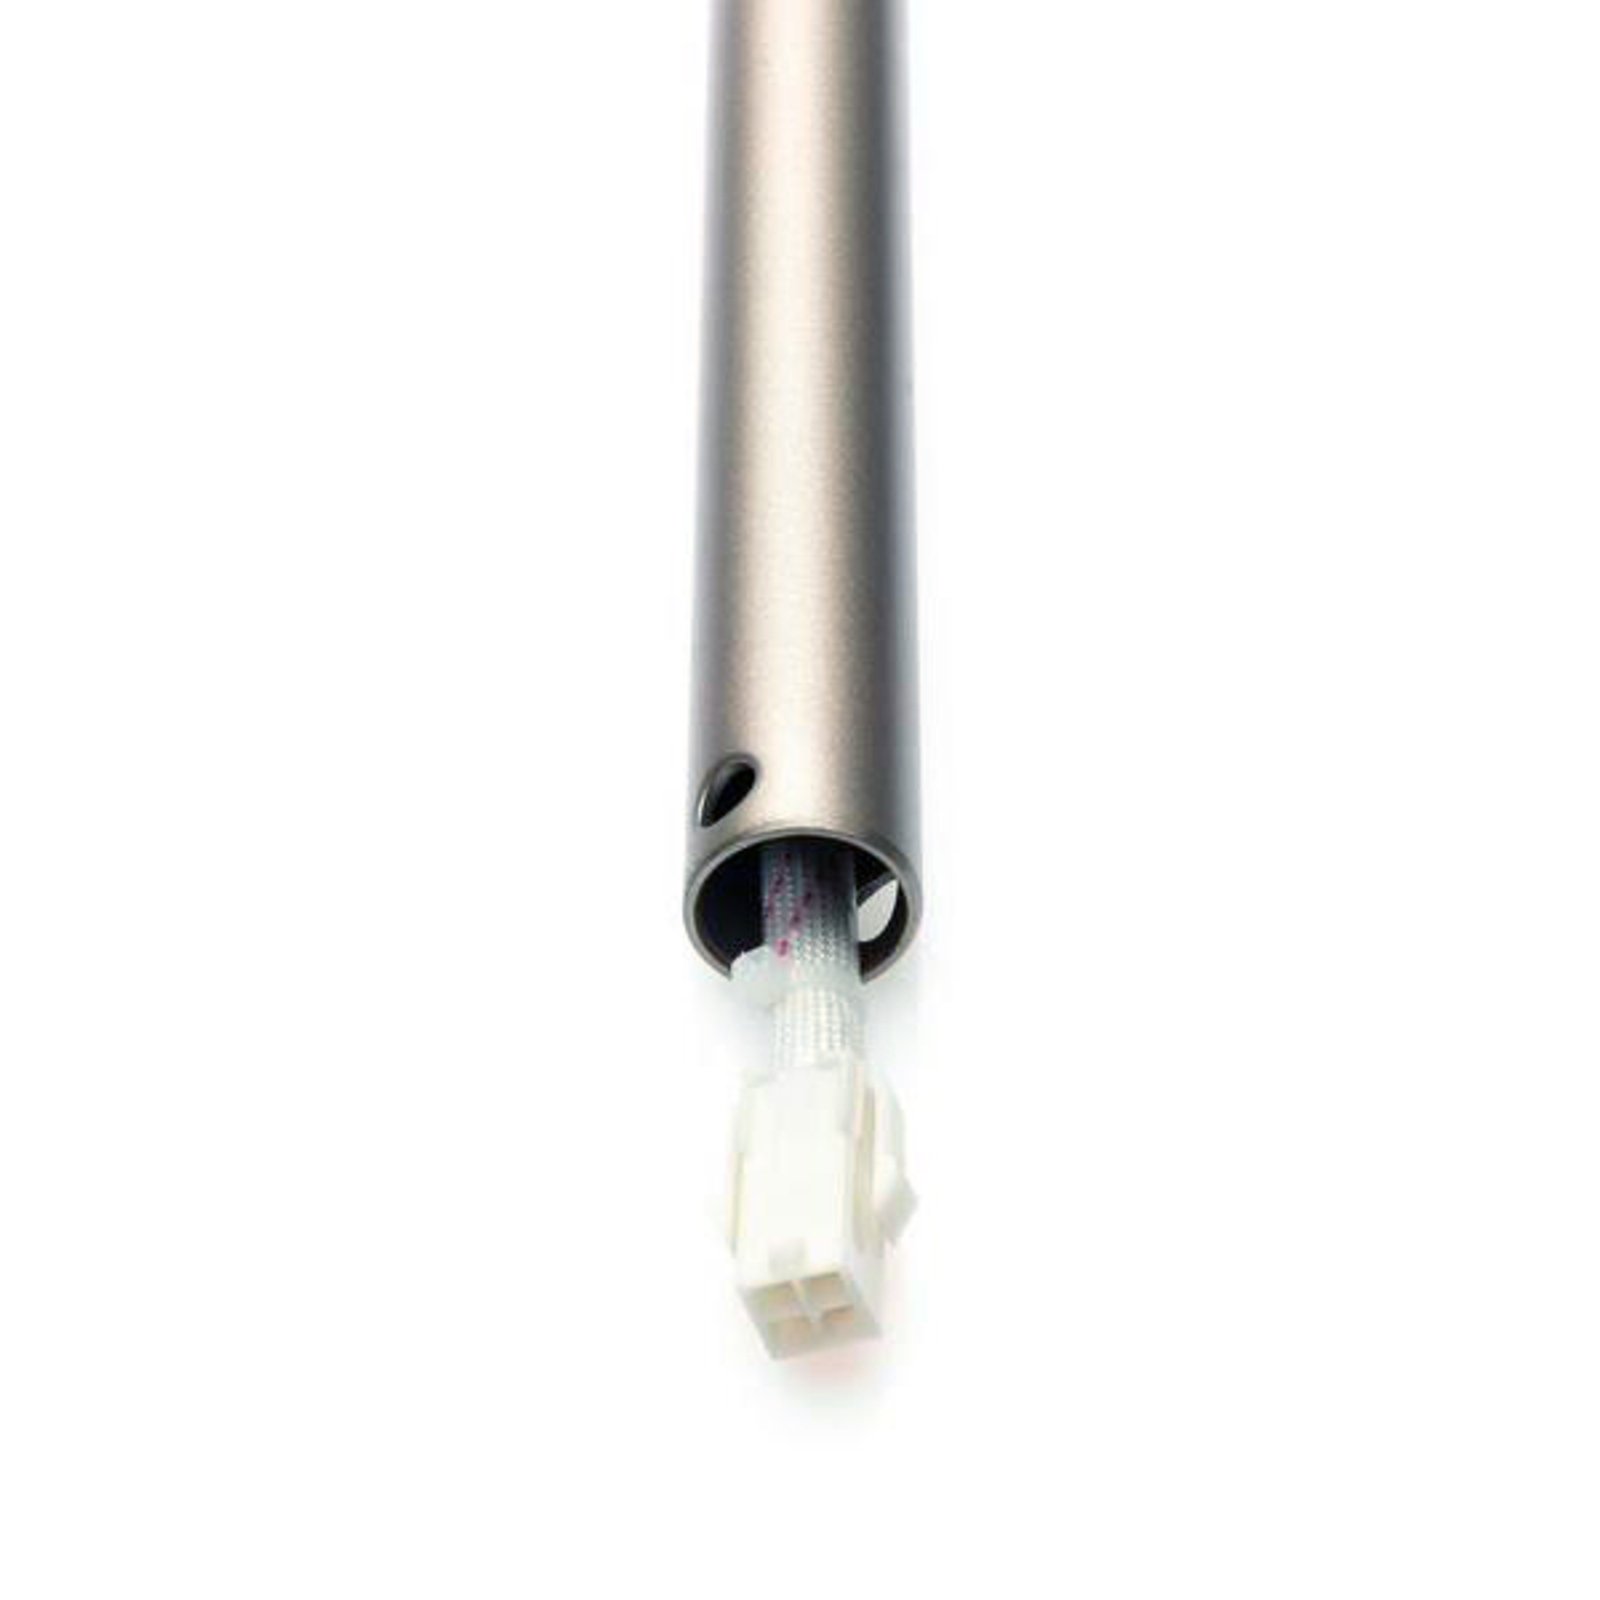 30.5 cm extension rod in titanium